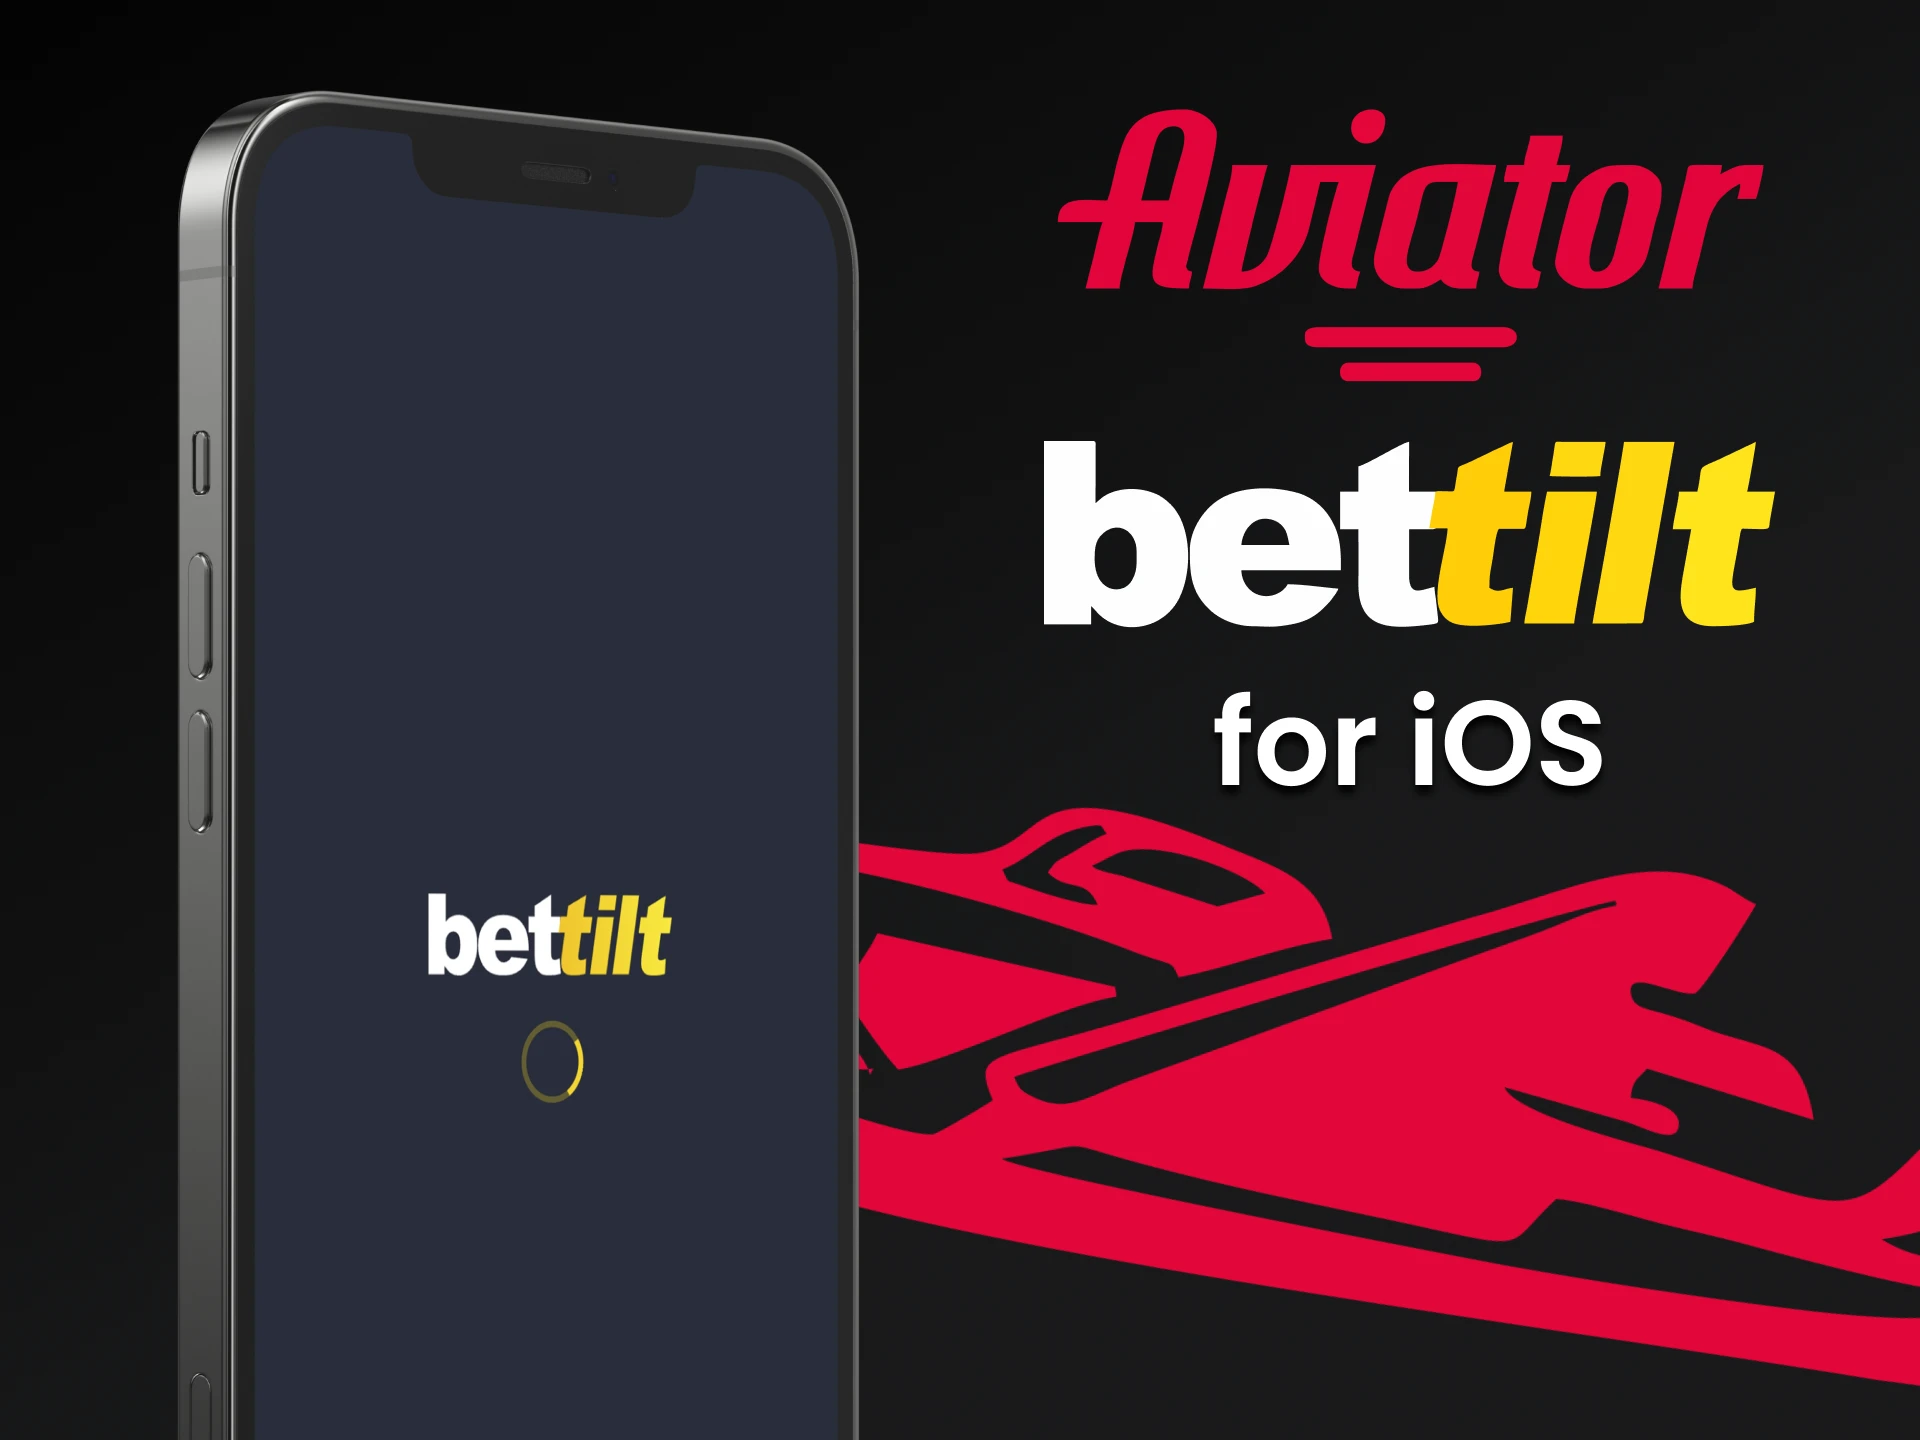 Faça o download do aplicativo Bettilt para iOS para jogar Aviator.